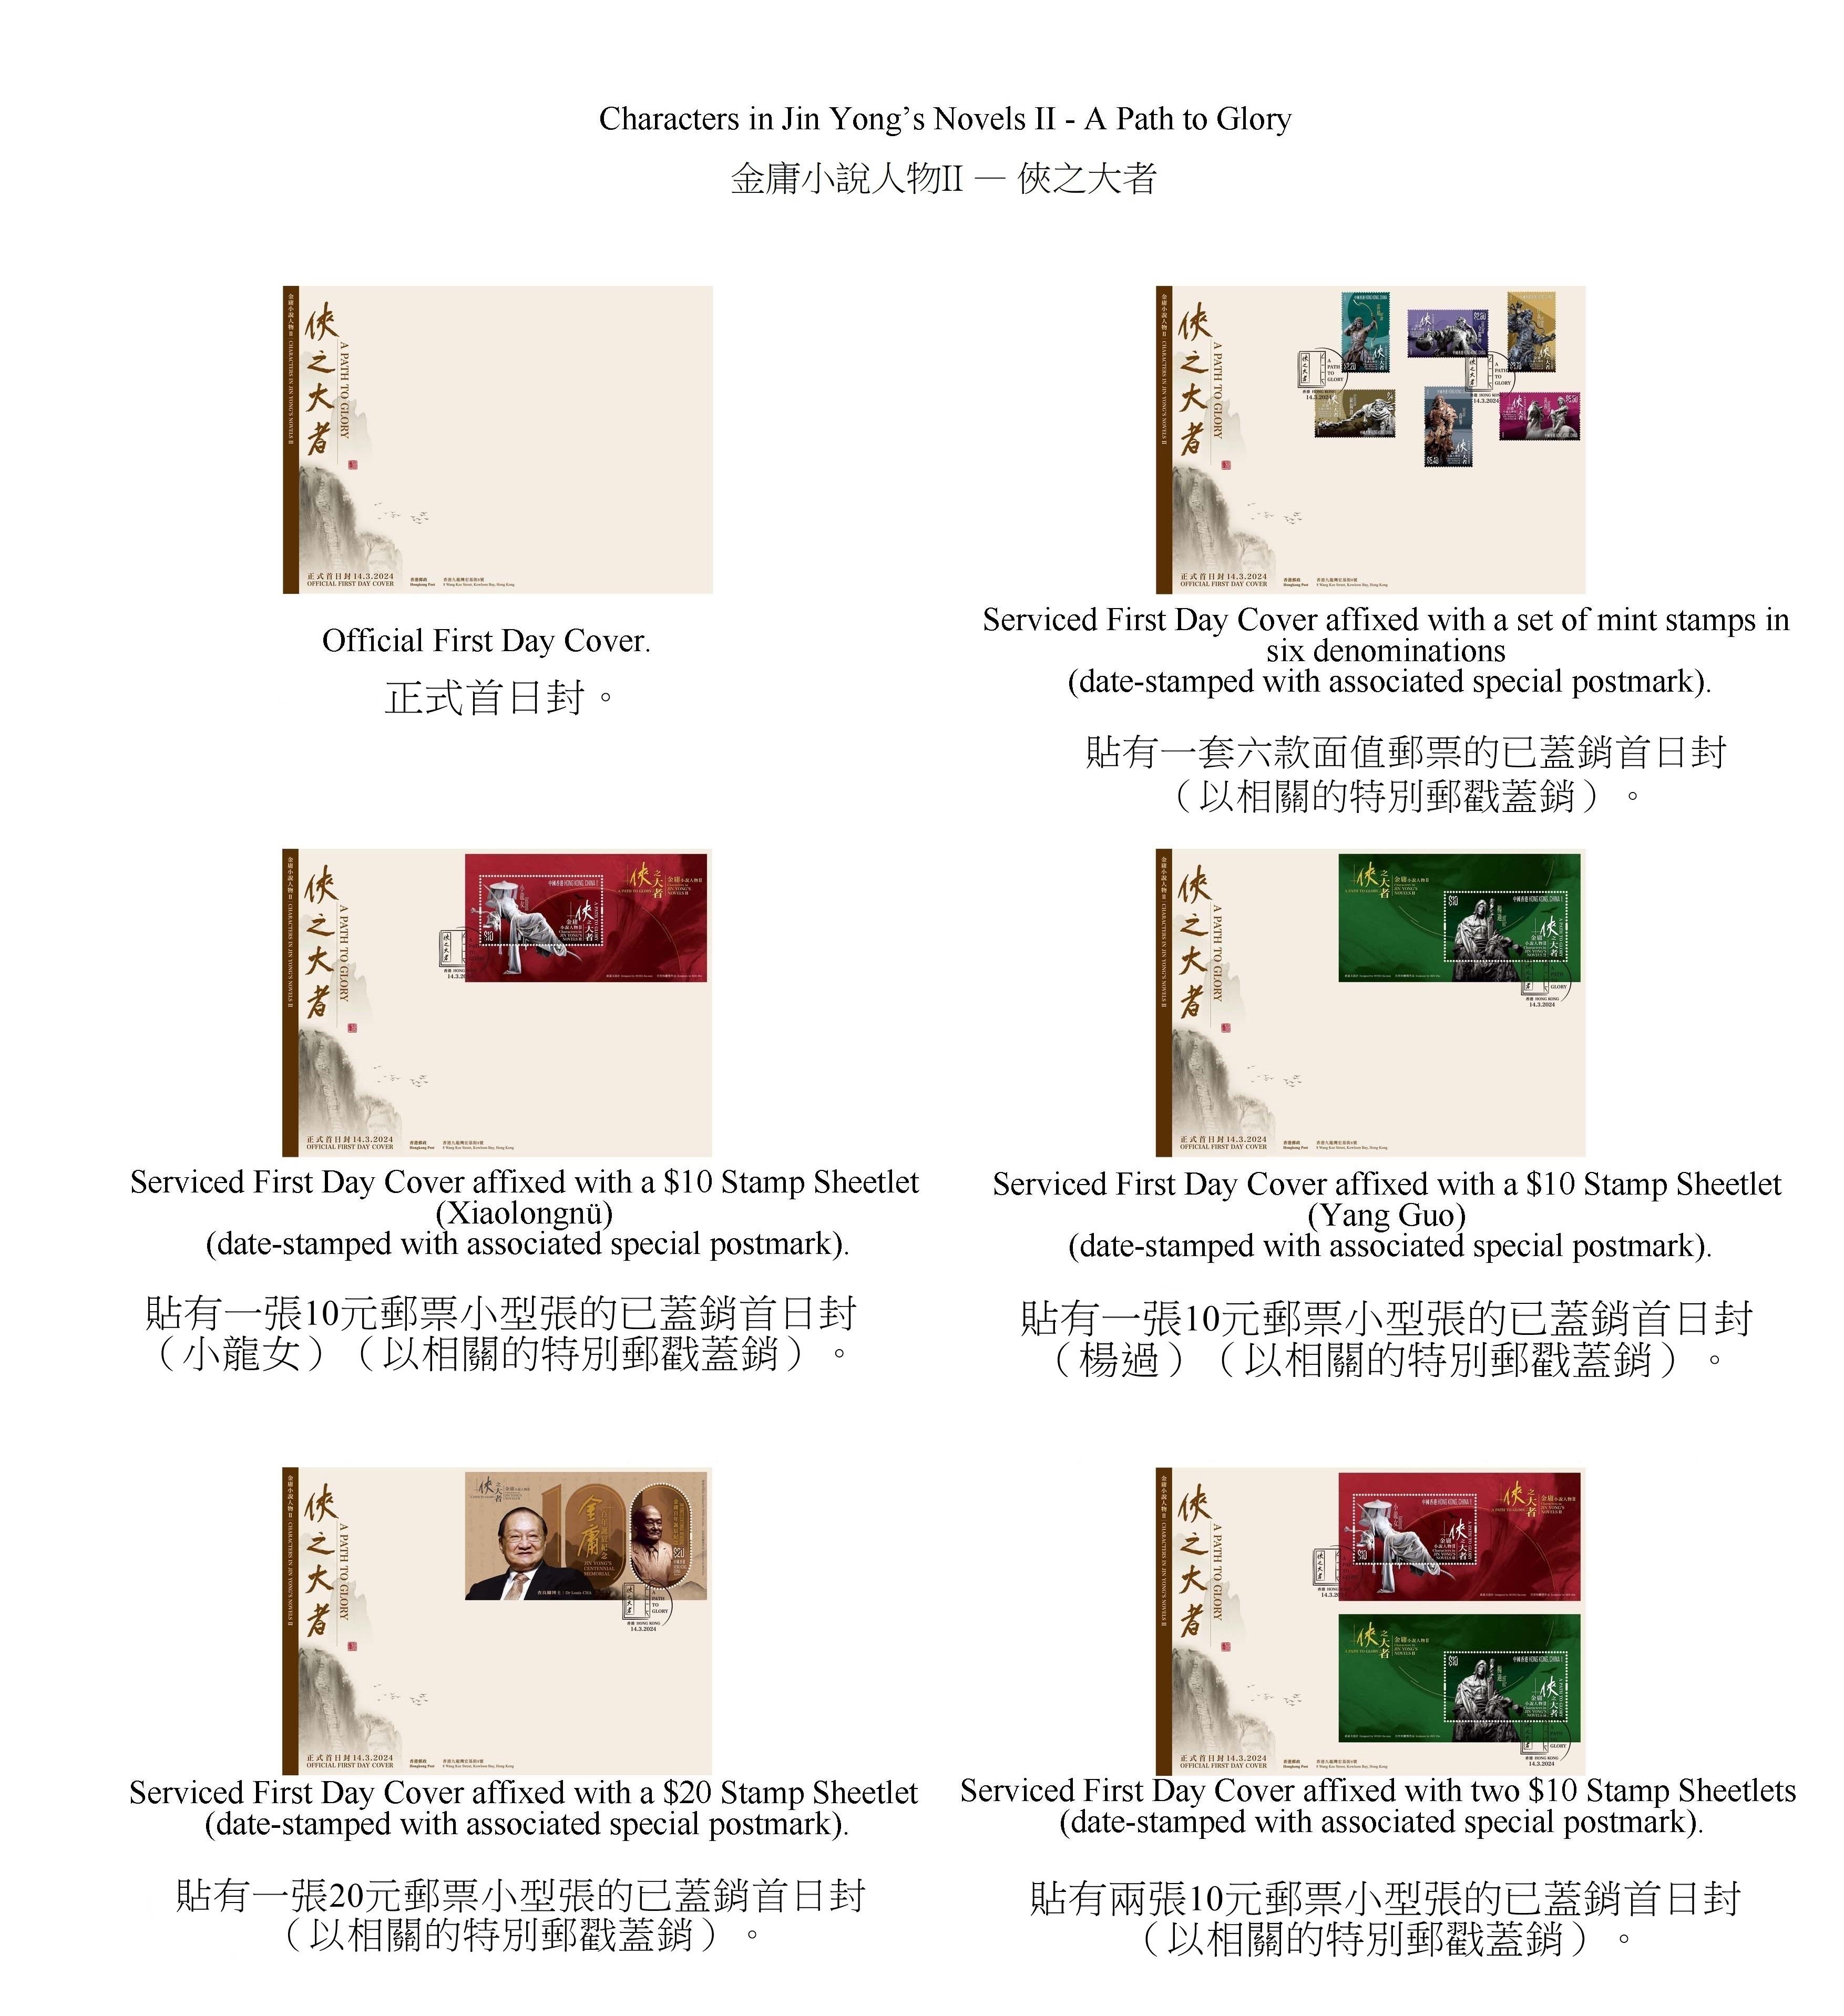 香港郵政三月十四日（星期四）發行以「金庸小說人物II──俠之大者」為題的特別郵票及相關集郵品。圖示首日封。
 